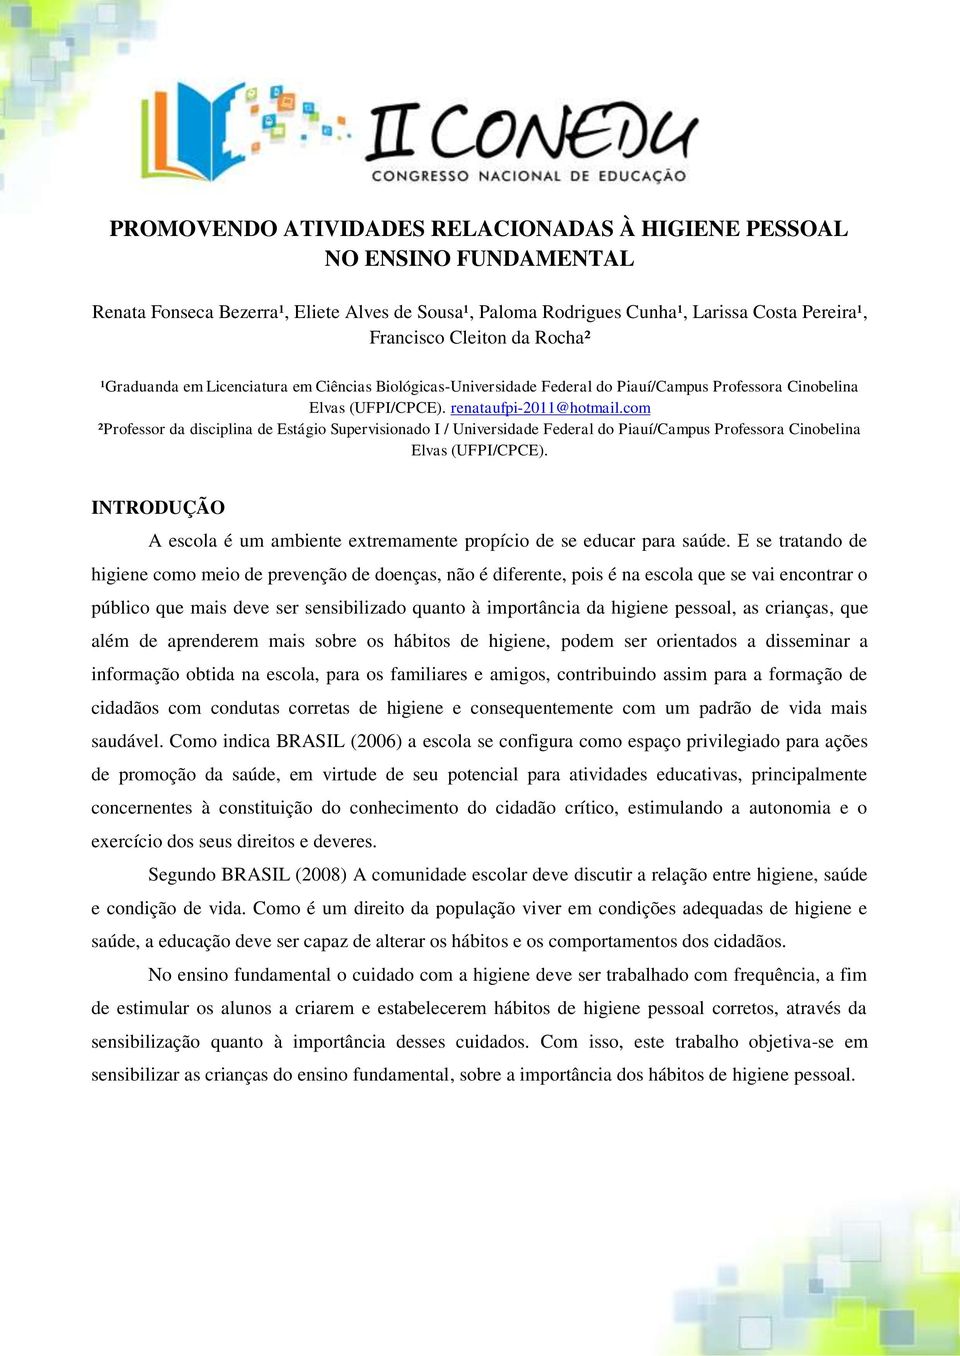 com ²Professor da disciplina de Estágio Supervisionado I / Universidade Federal do Piauí/Campus Professora Cinobelina Elvas (UFPI/CPCE).